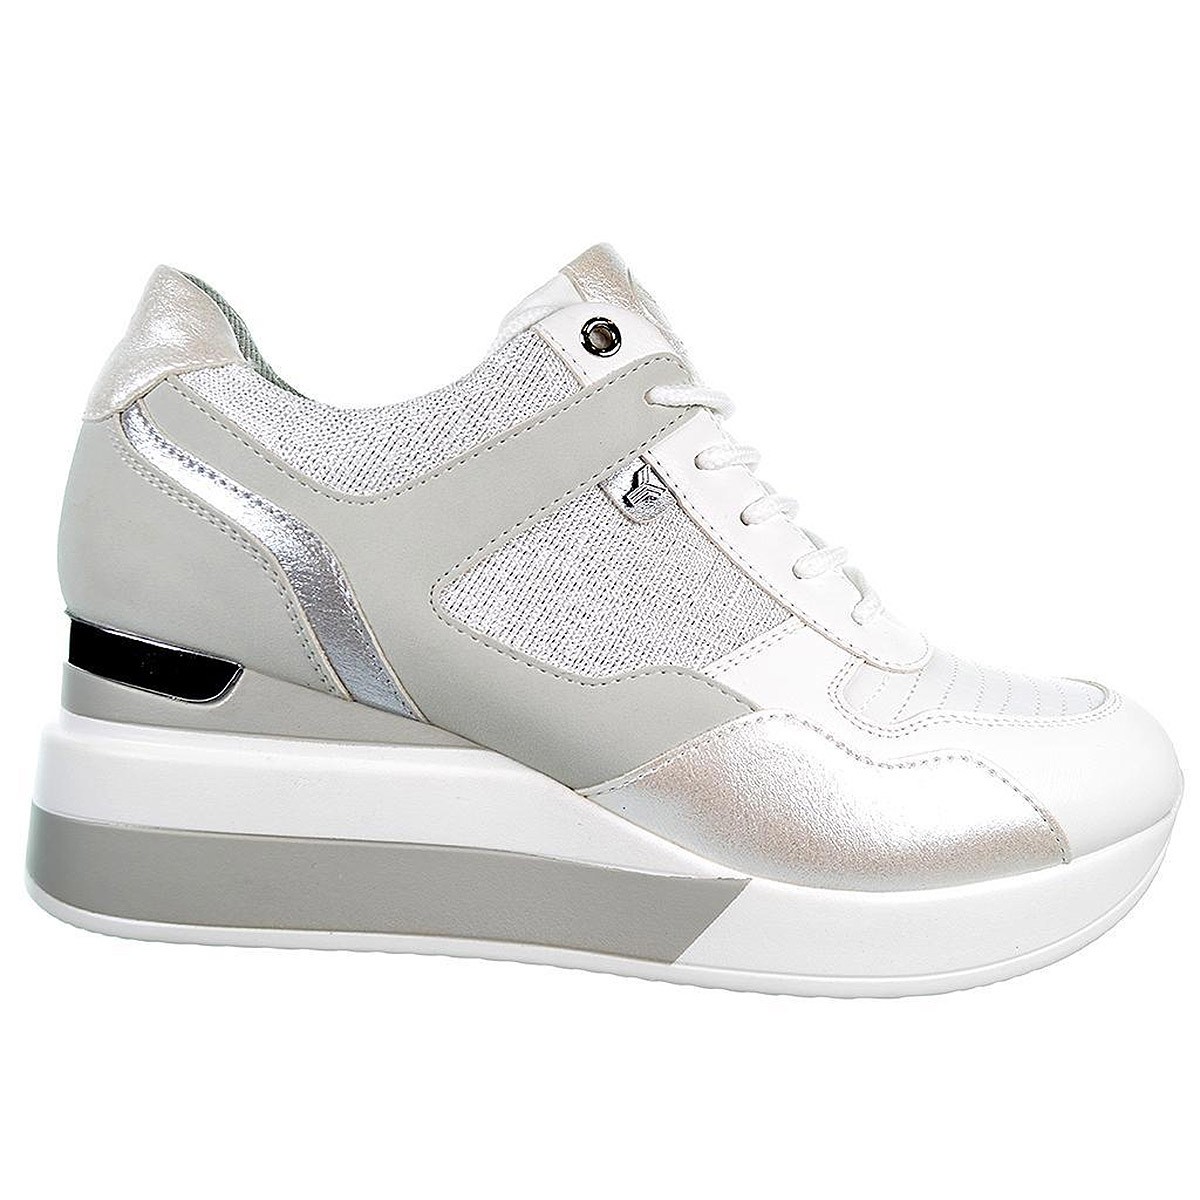 Acacia Yumas Sneaker Zapato Sneaker en microfibra y nylon. Forro textil transpirable y plantilla confort látex. Cordones ajustab